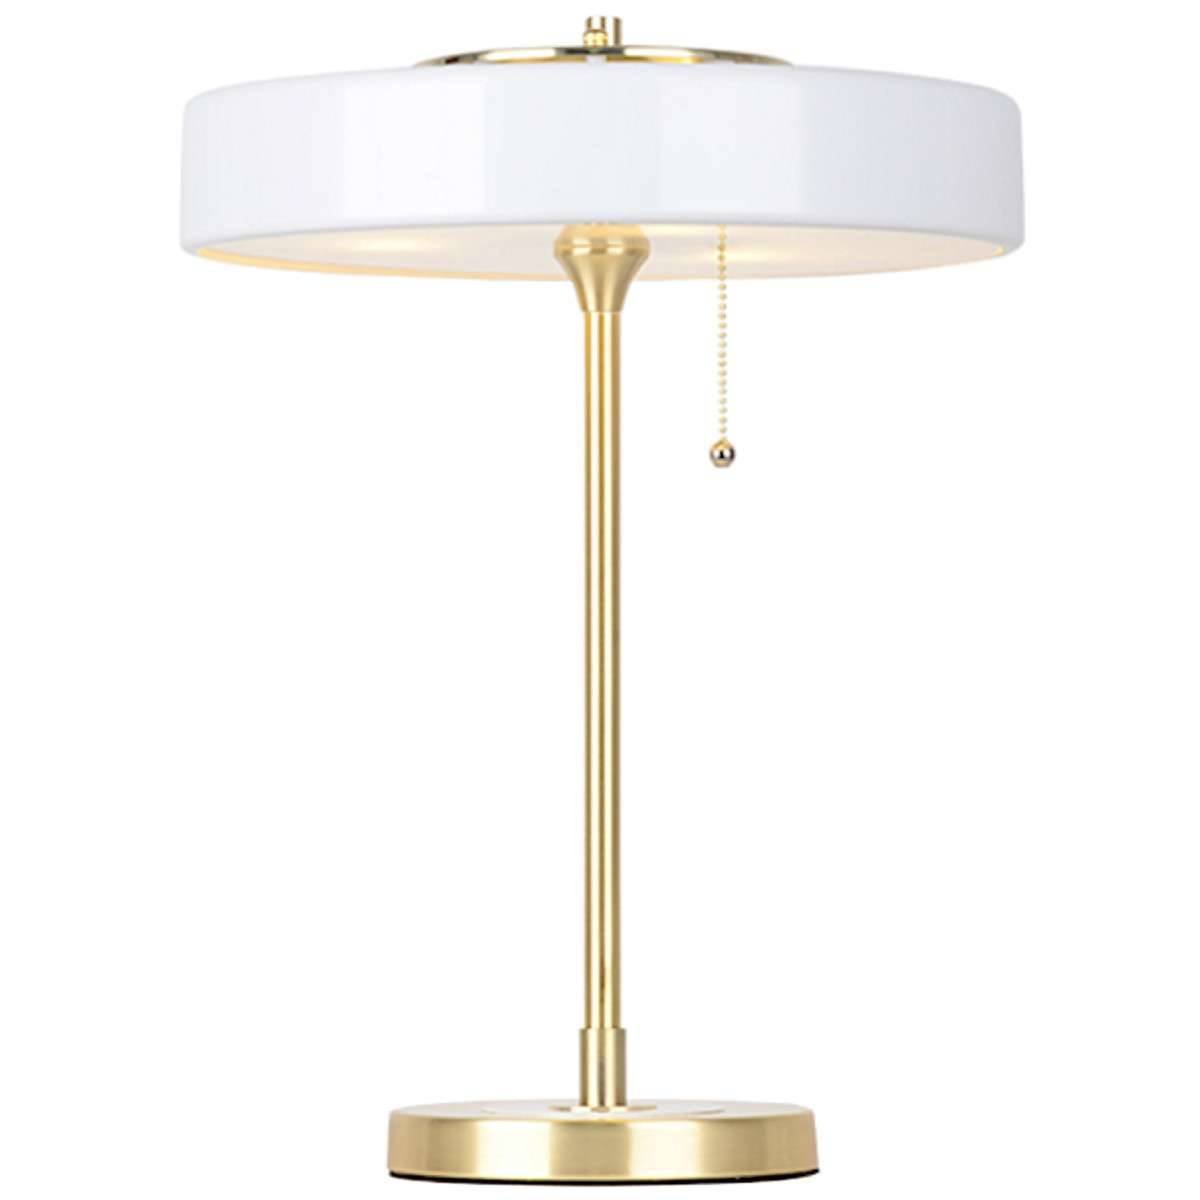 Stojąca LAMPA stołowa CG2000 WH COPEL gabinetowa LAMPKA biurkowa LED 24W 3000K okrągła Art Deco klasyczna złota biała